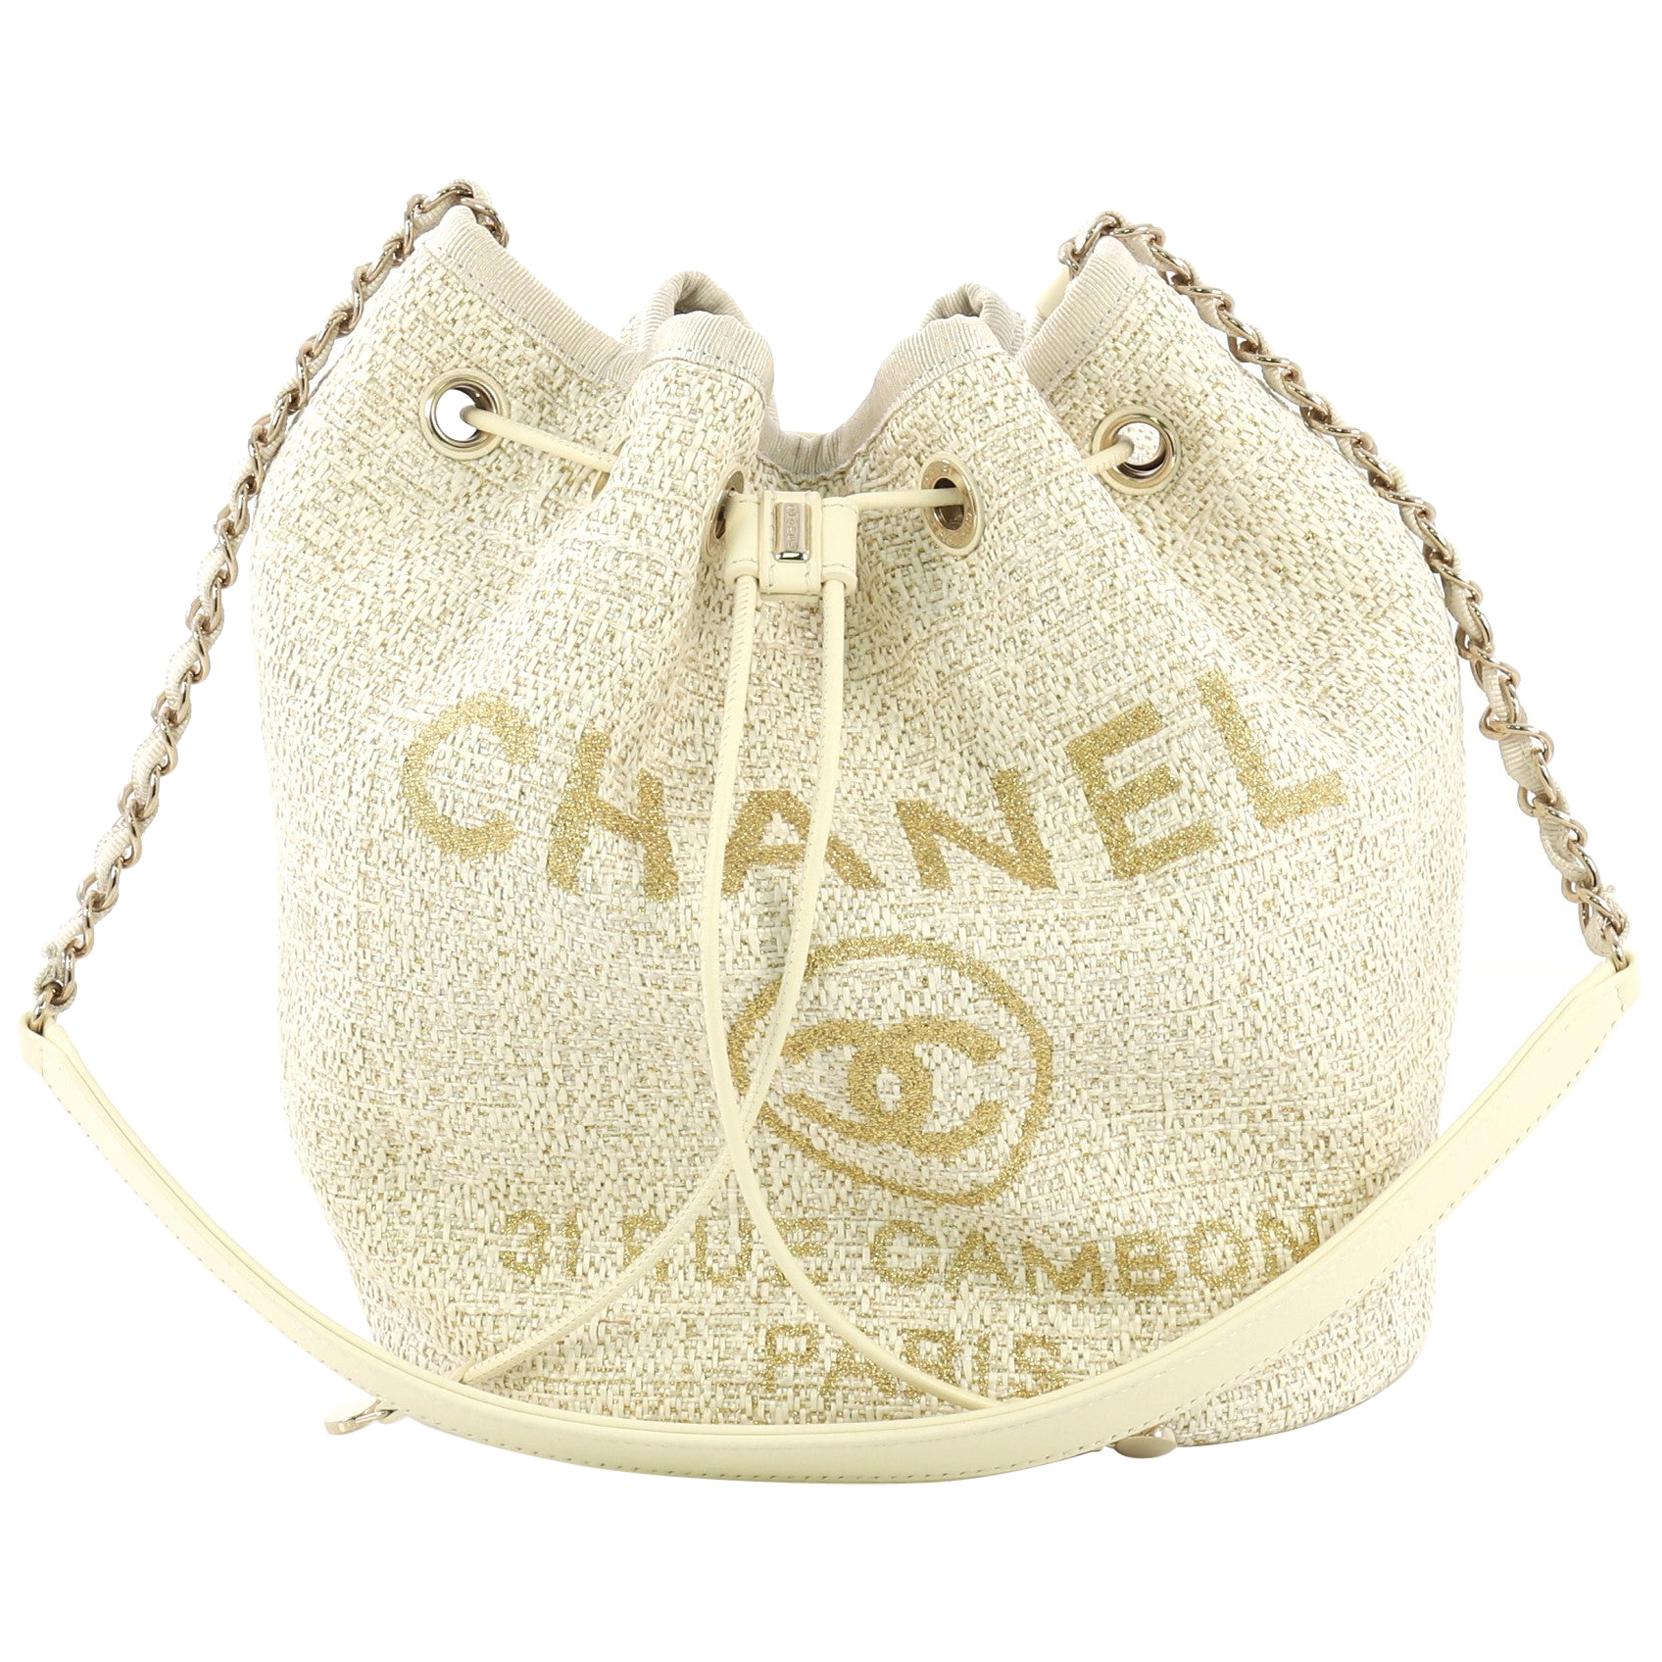 Chanel Grey Woven Straw Raffia Medium Deauville Tote Chanel